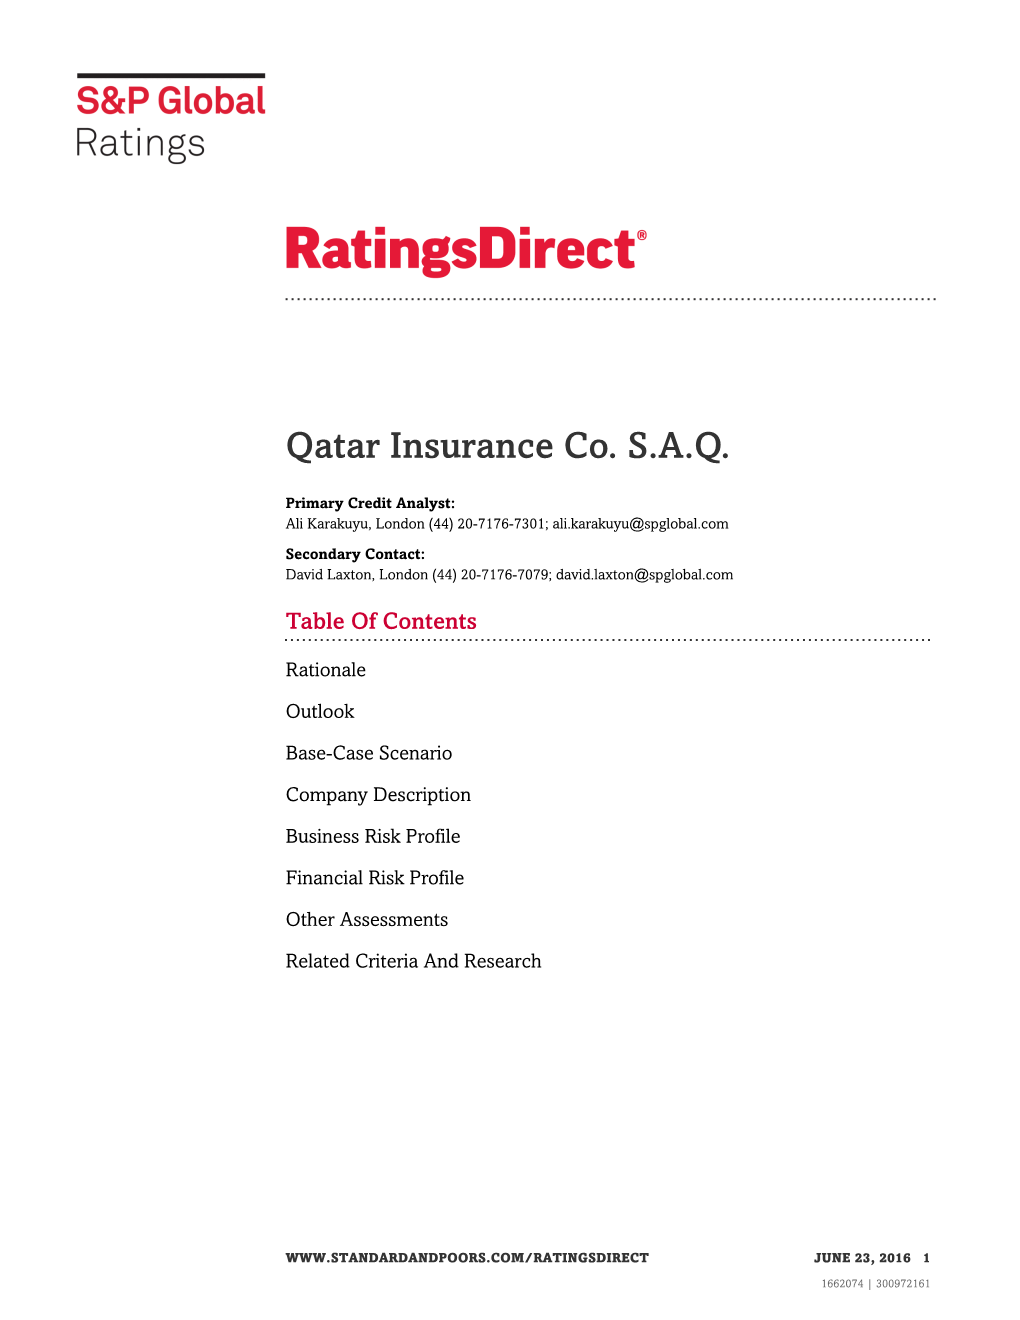 Qatar Insurance Co. S.A.Q